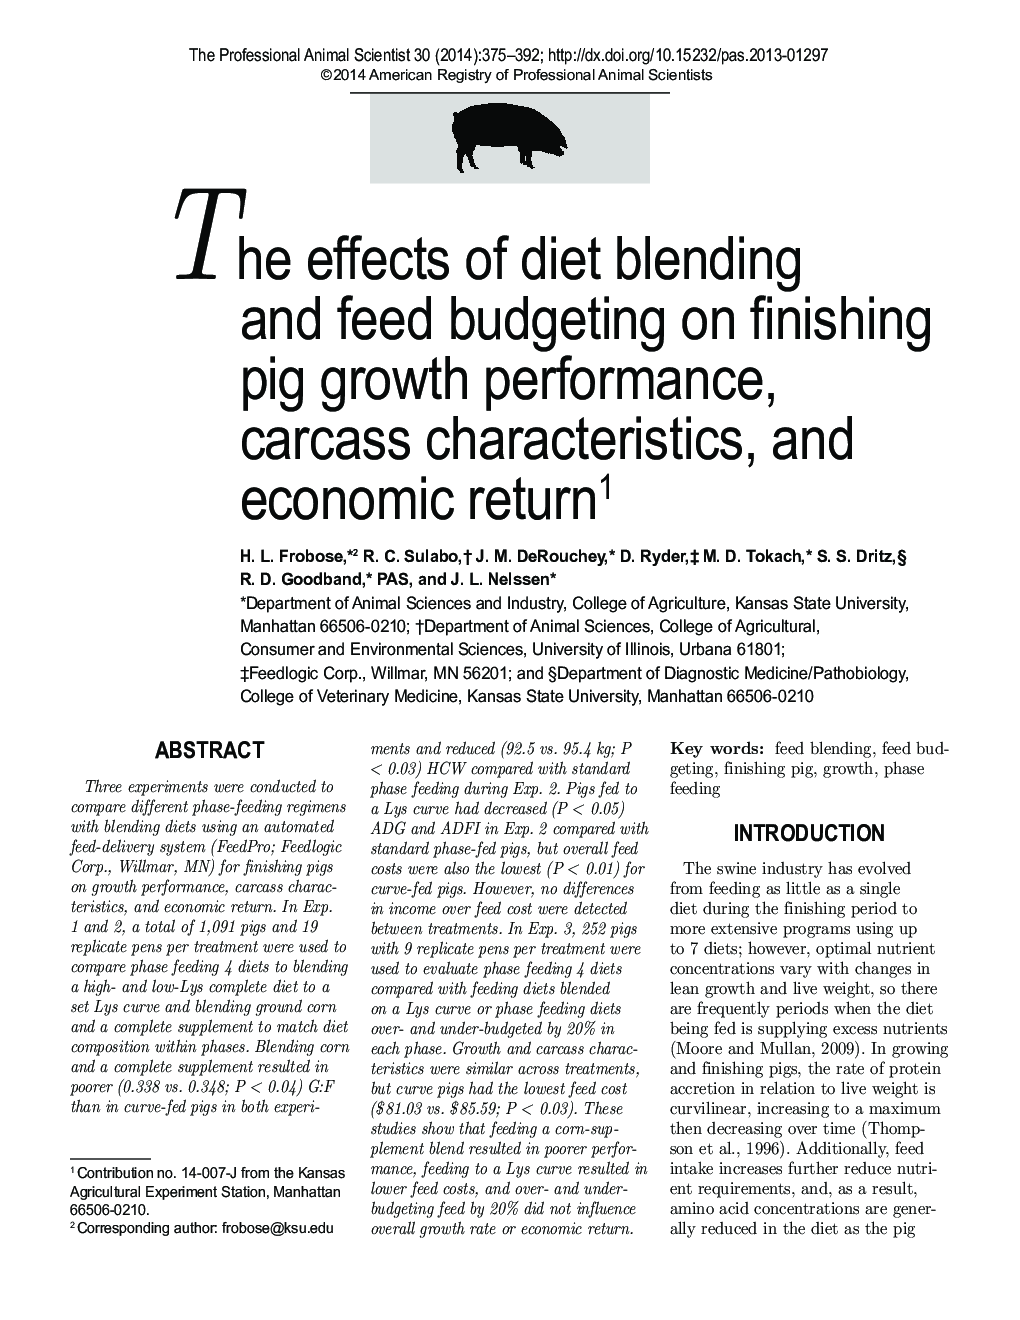 اثرات ترکیب رژیم غذایی و بودجه بندی غذا بر عملکرد رشد خوک، ویژگی های لاشه و بازده اقتصادی 1 